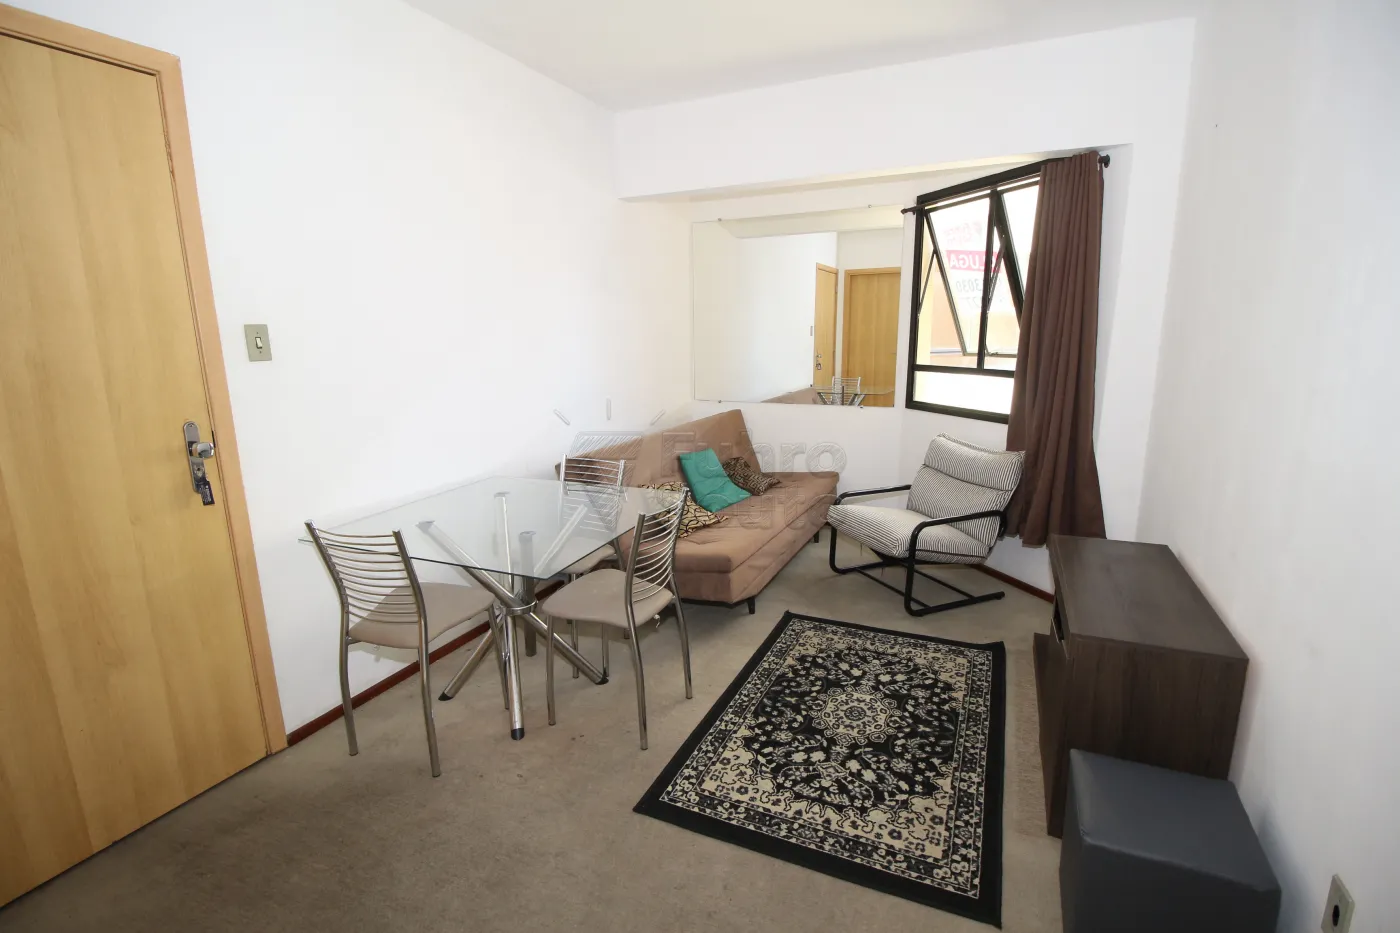 Alugar Apartamento / Padrão em Pelotas R$ 800,00 - Foto 2